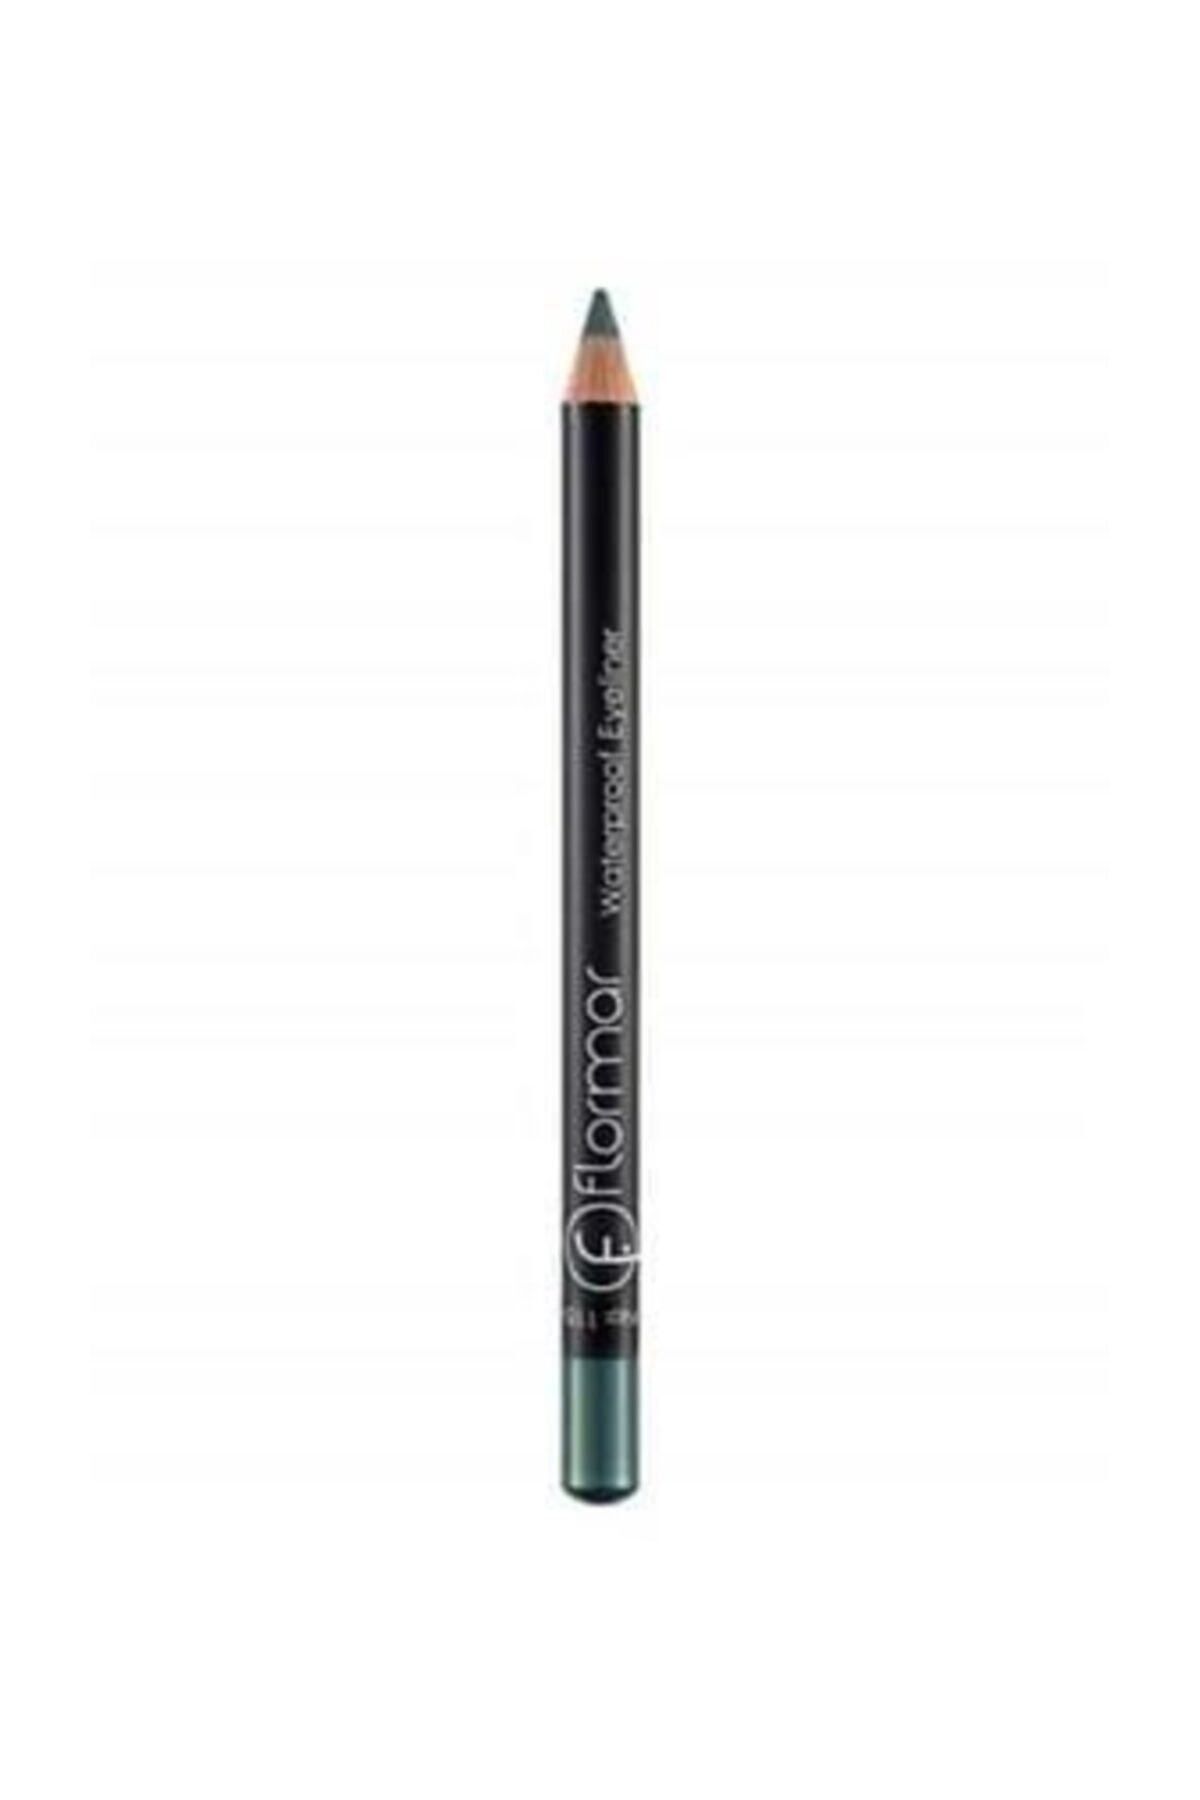 Flormar Water-Resistant Green Eye Pencil Waterproof